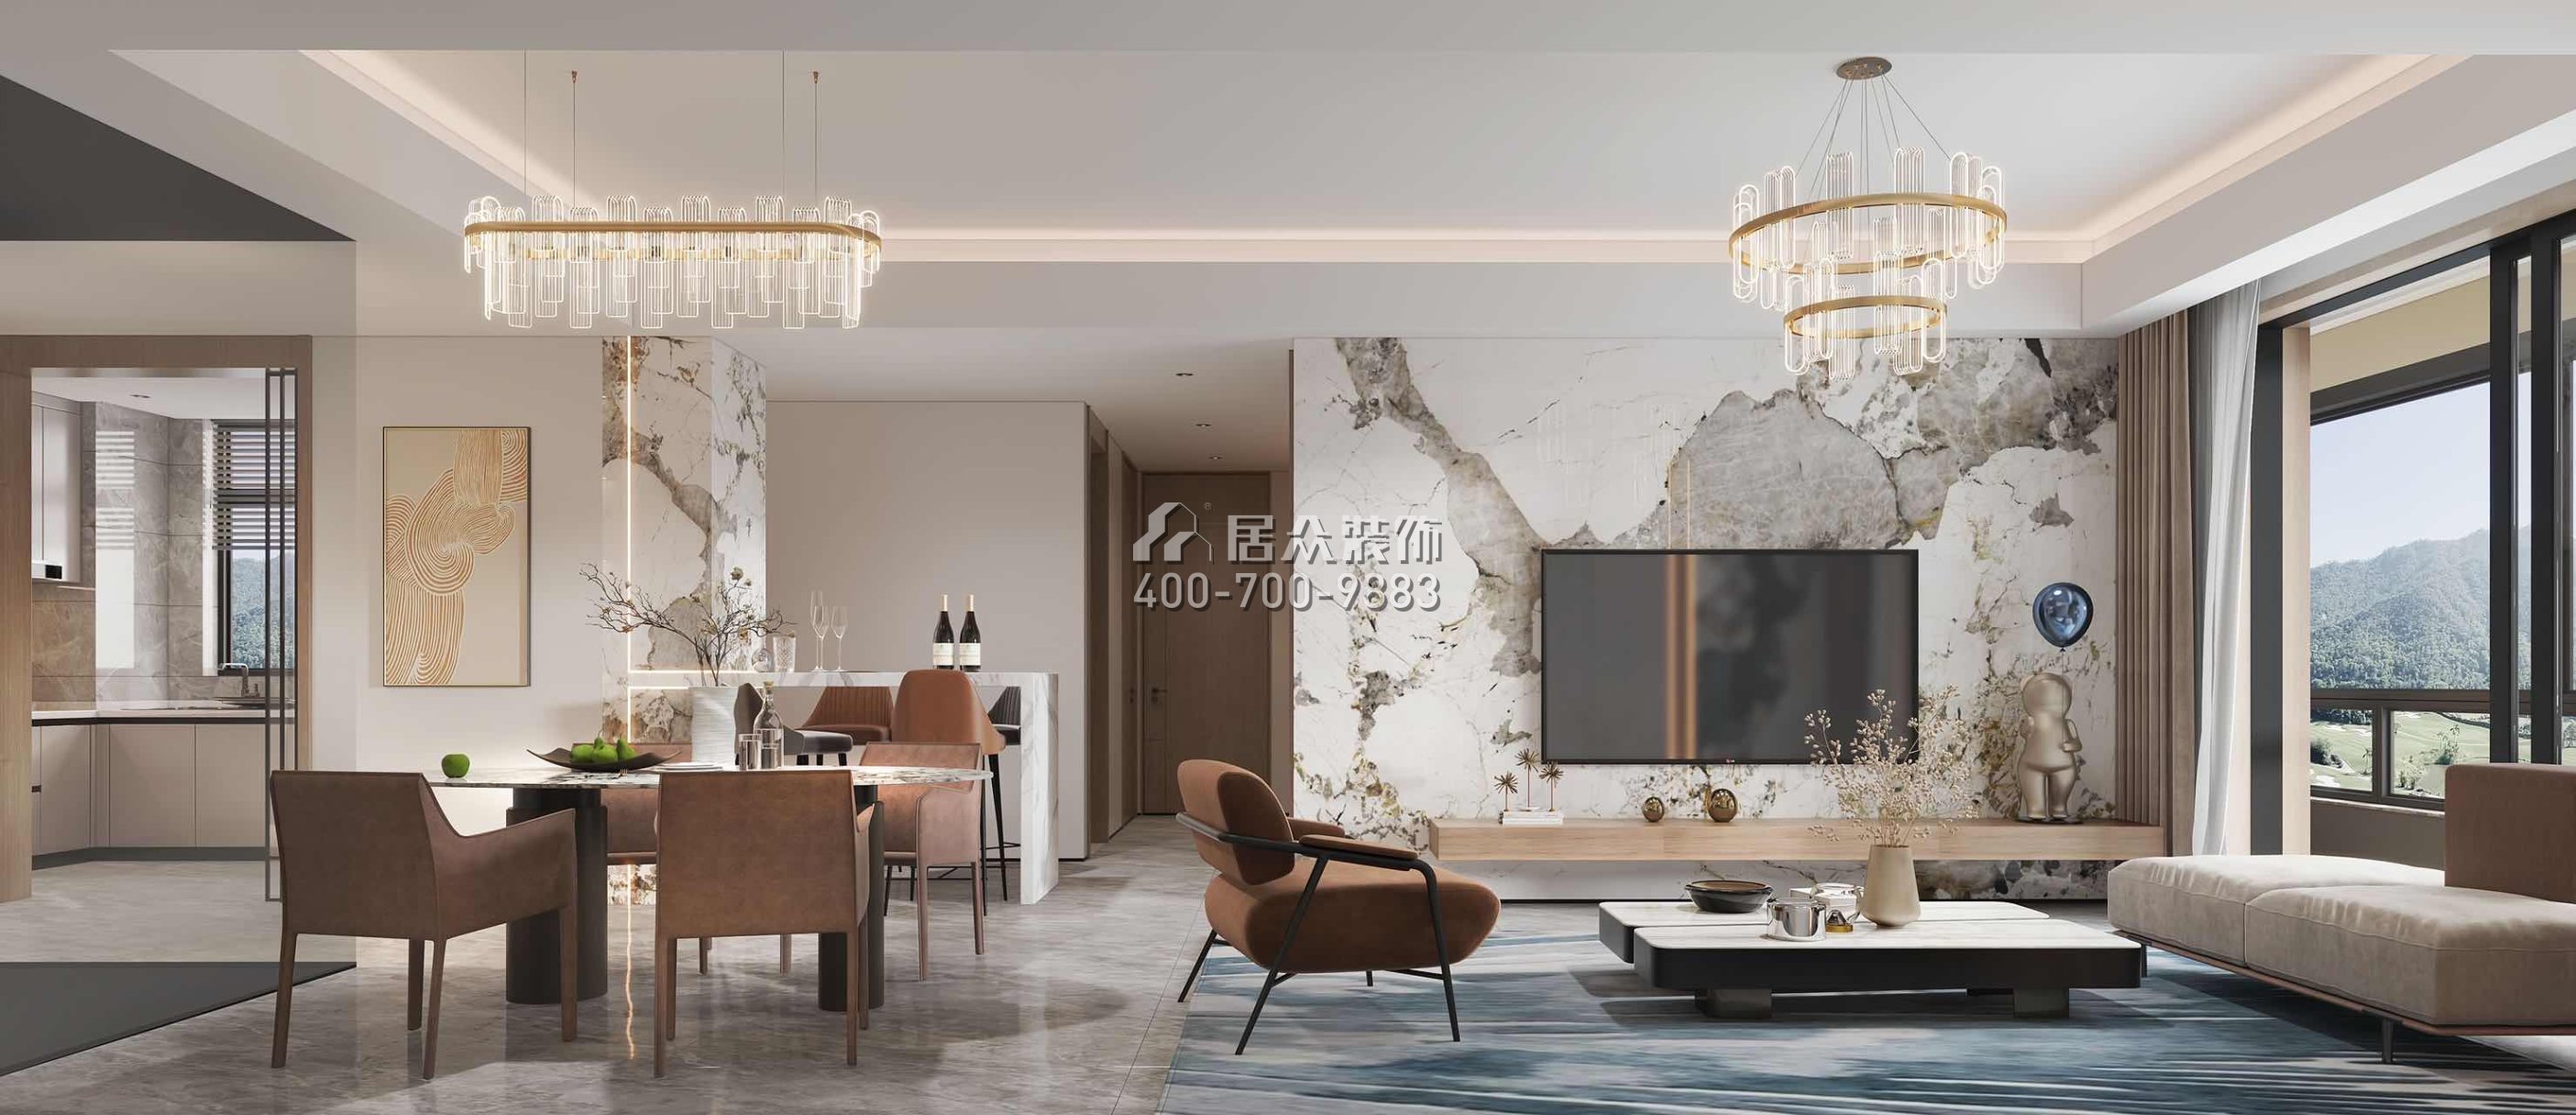 翠湖香山百合苑116平方米现代简约风格平层户型客餐厅一体装修效果图